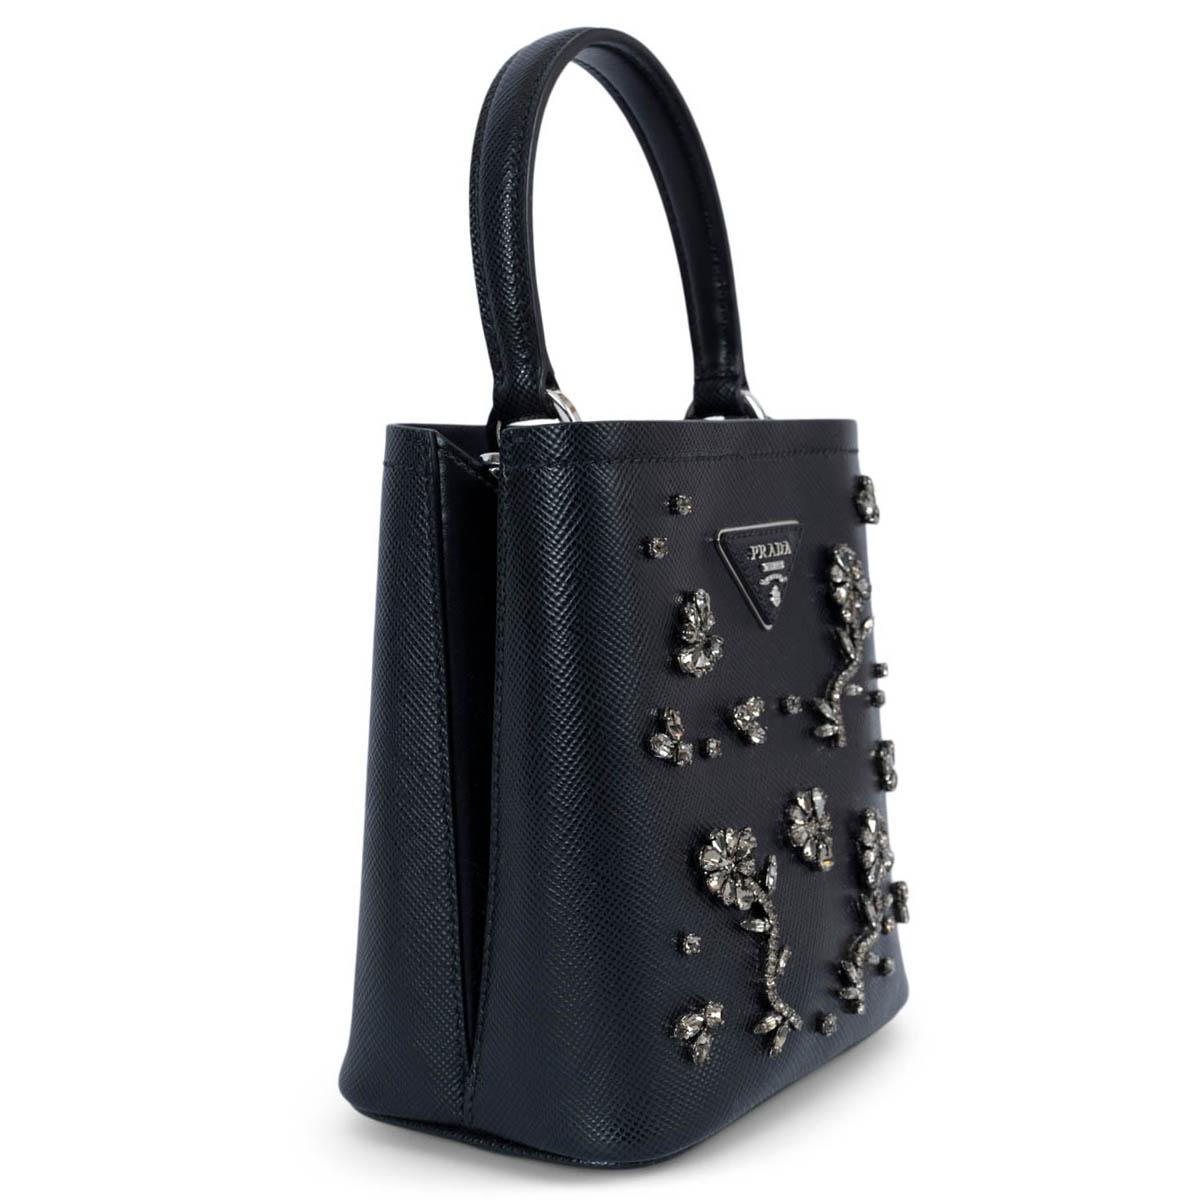 100% authentische Prada Crystal Panier Small Bucket Bag aus schwarzem Saffiano-Leder, verziert mit Kristallblumen und silberfarbener Hardware. Das elegante Design der Tasche mit einfachem Henkel zeichnet sich durch den Magnetverschluss an der